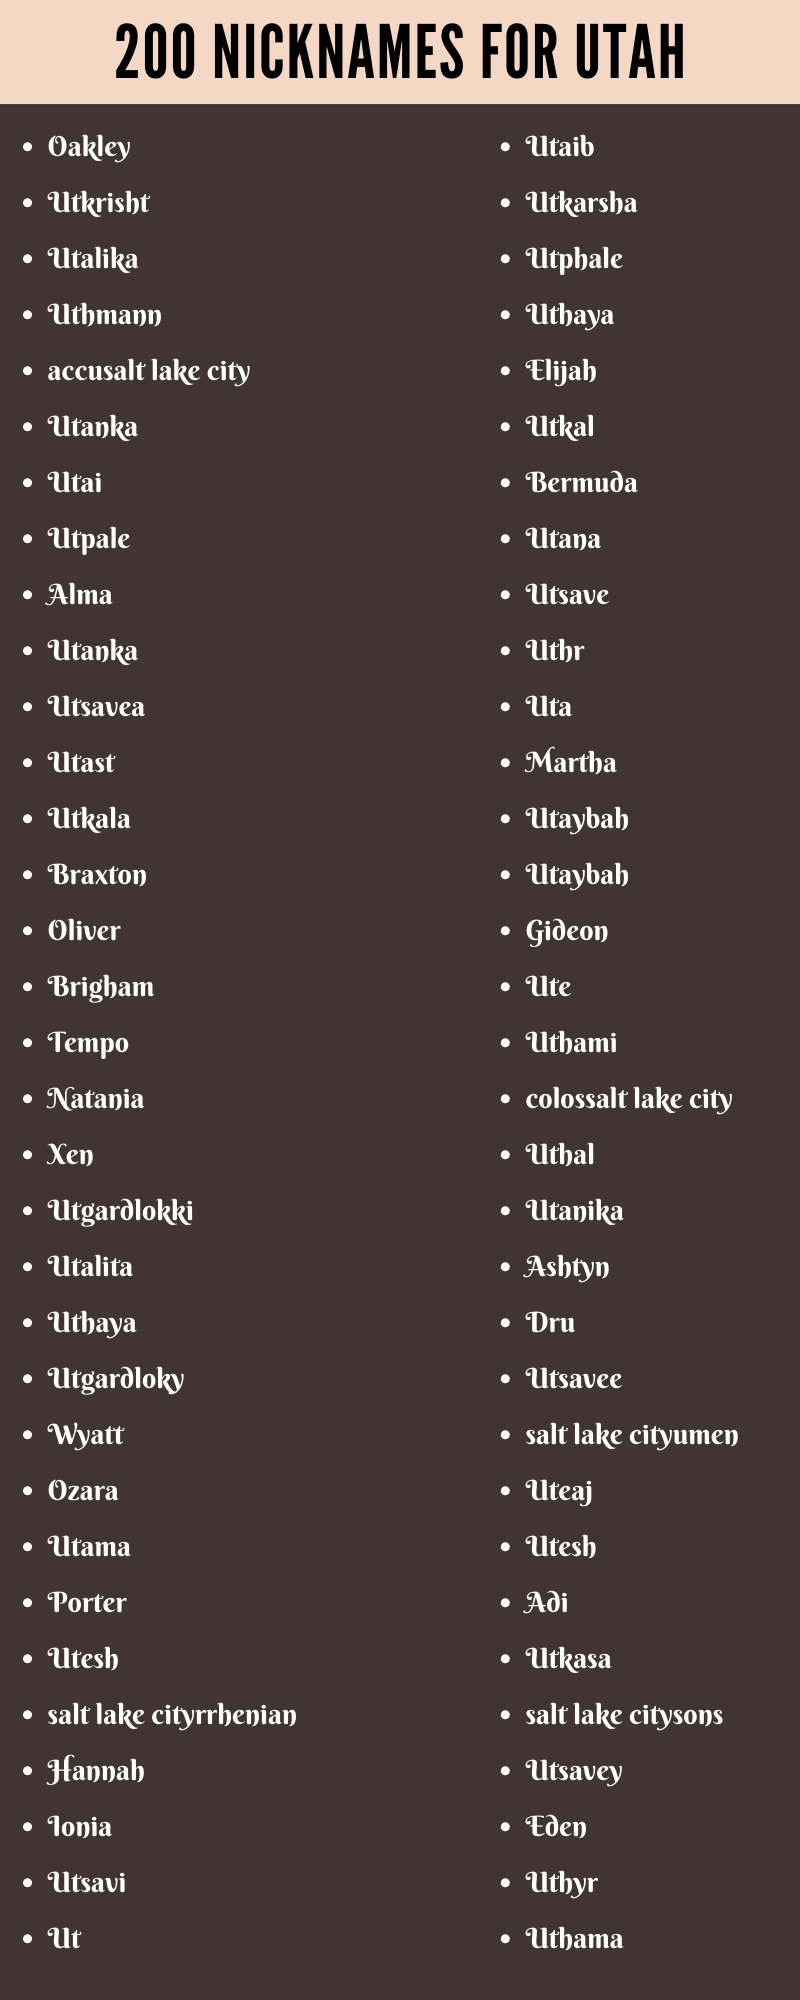 Nicknames For Utah